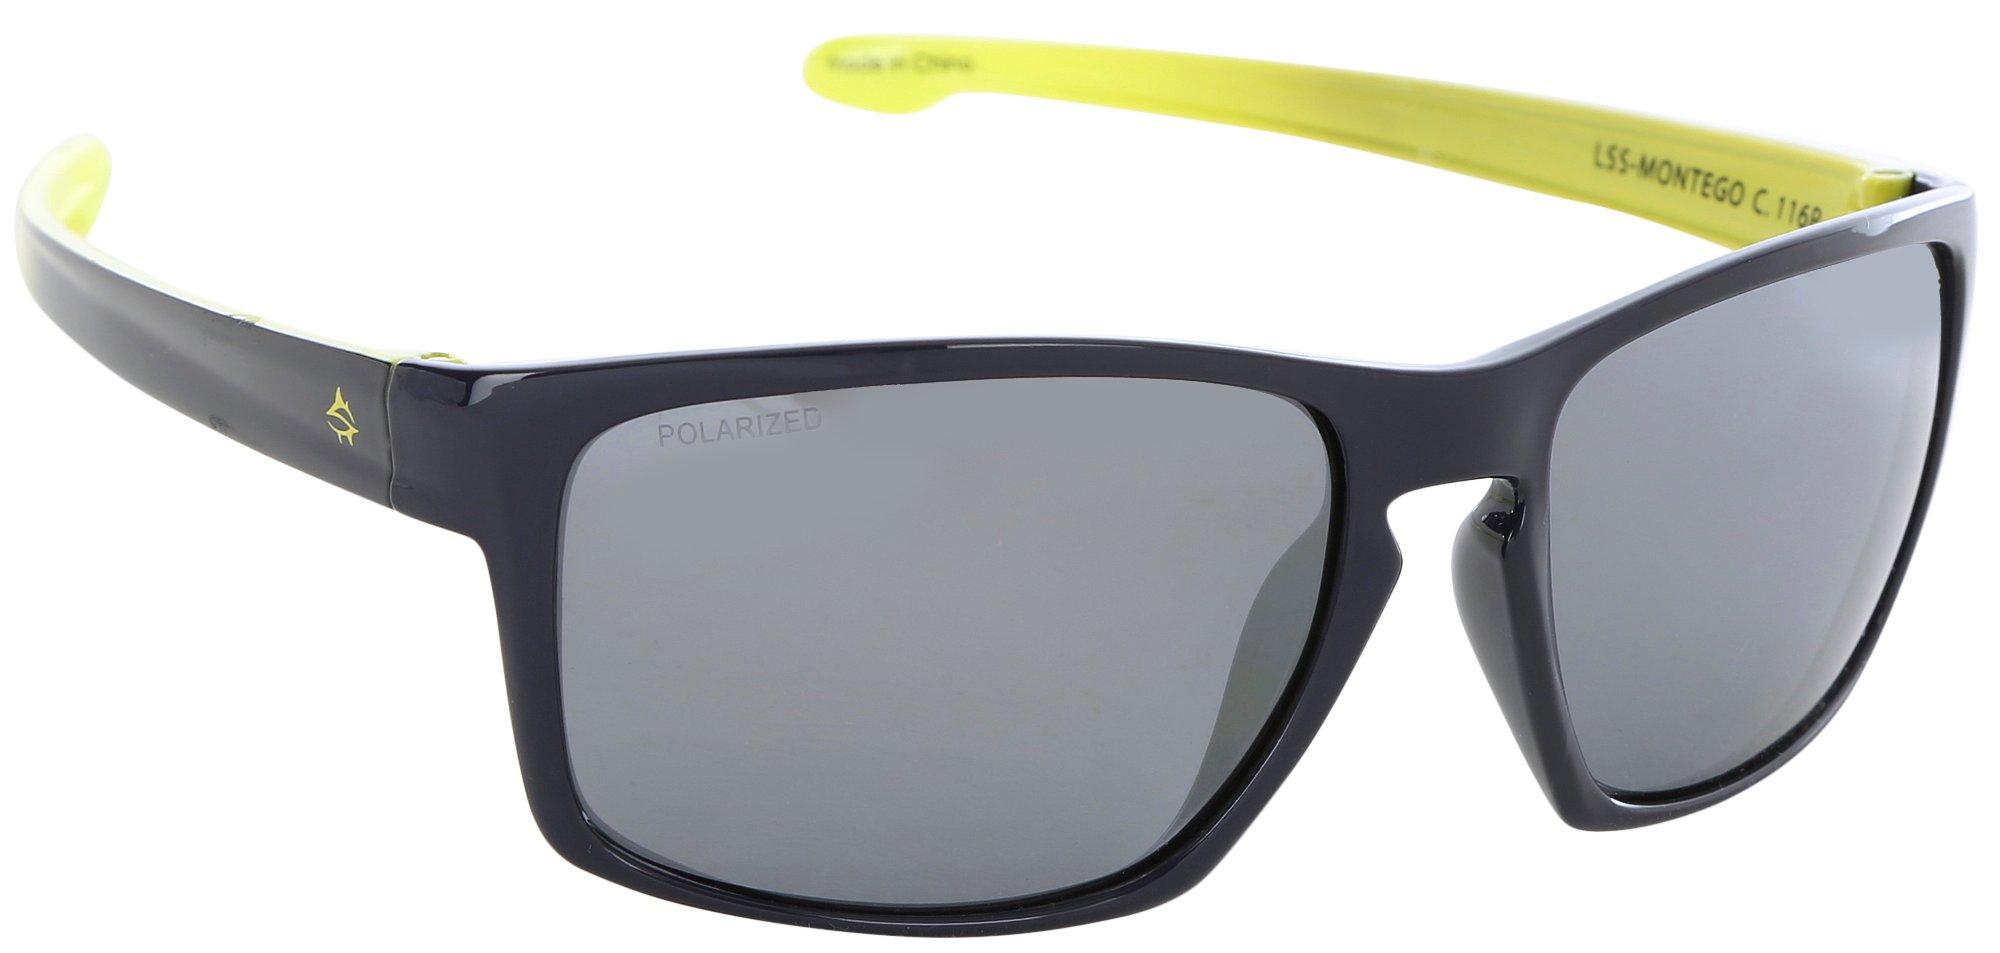 Mens Classic Round Color Block Mirror Sunglasses